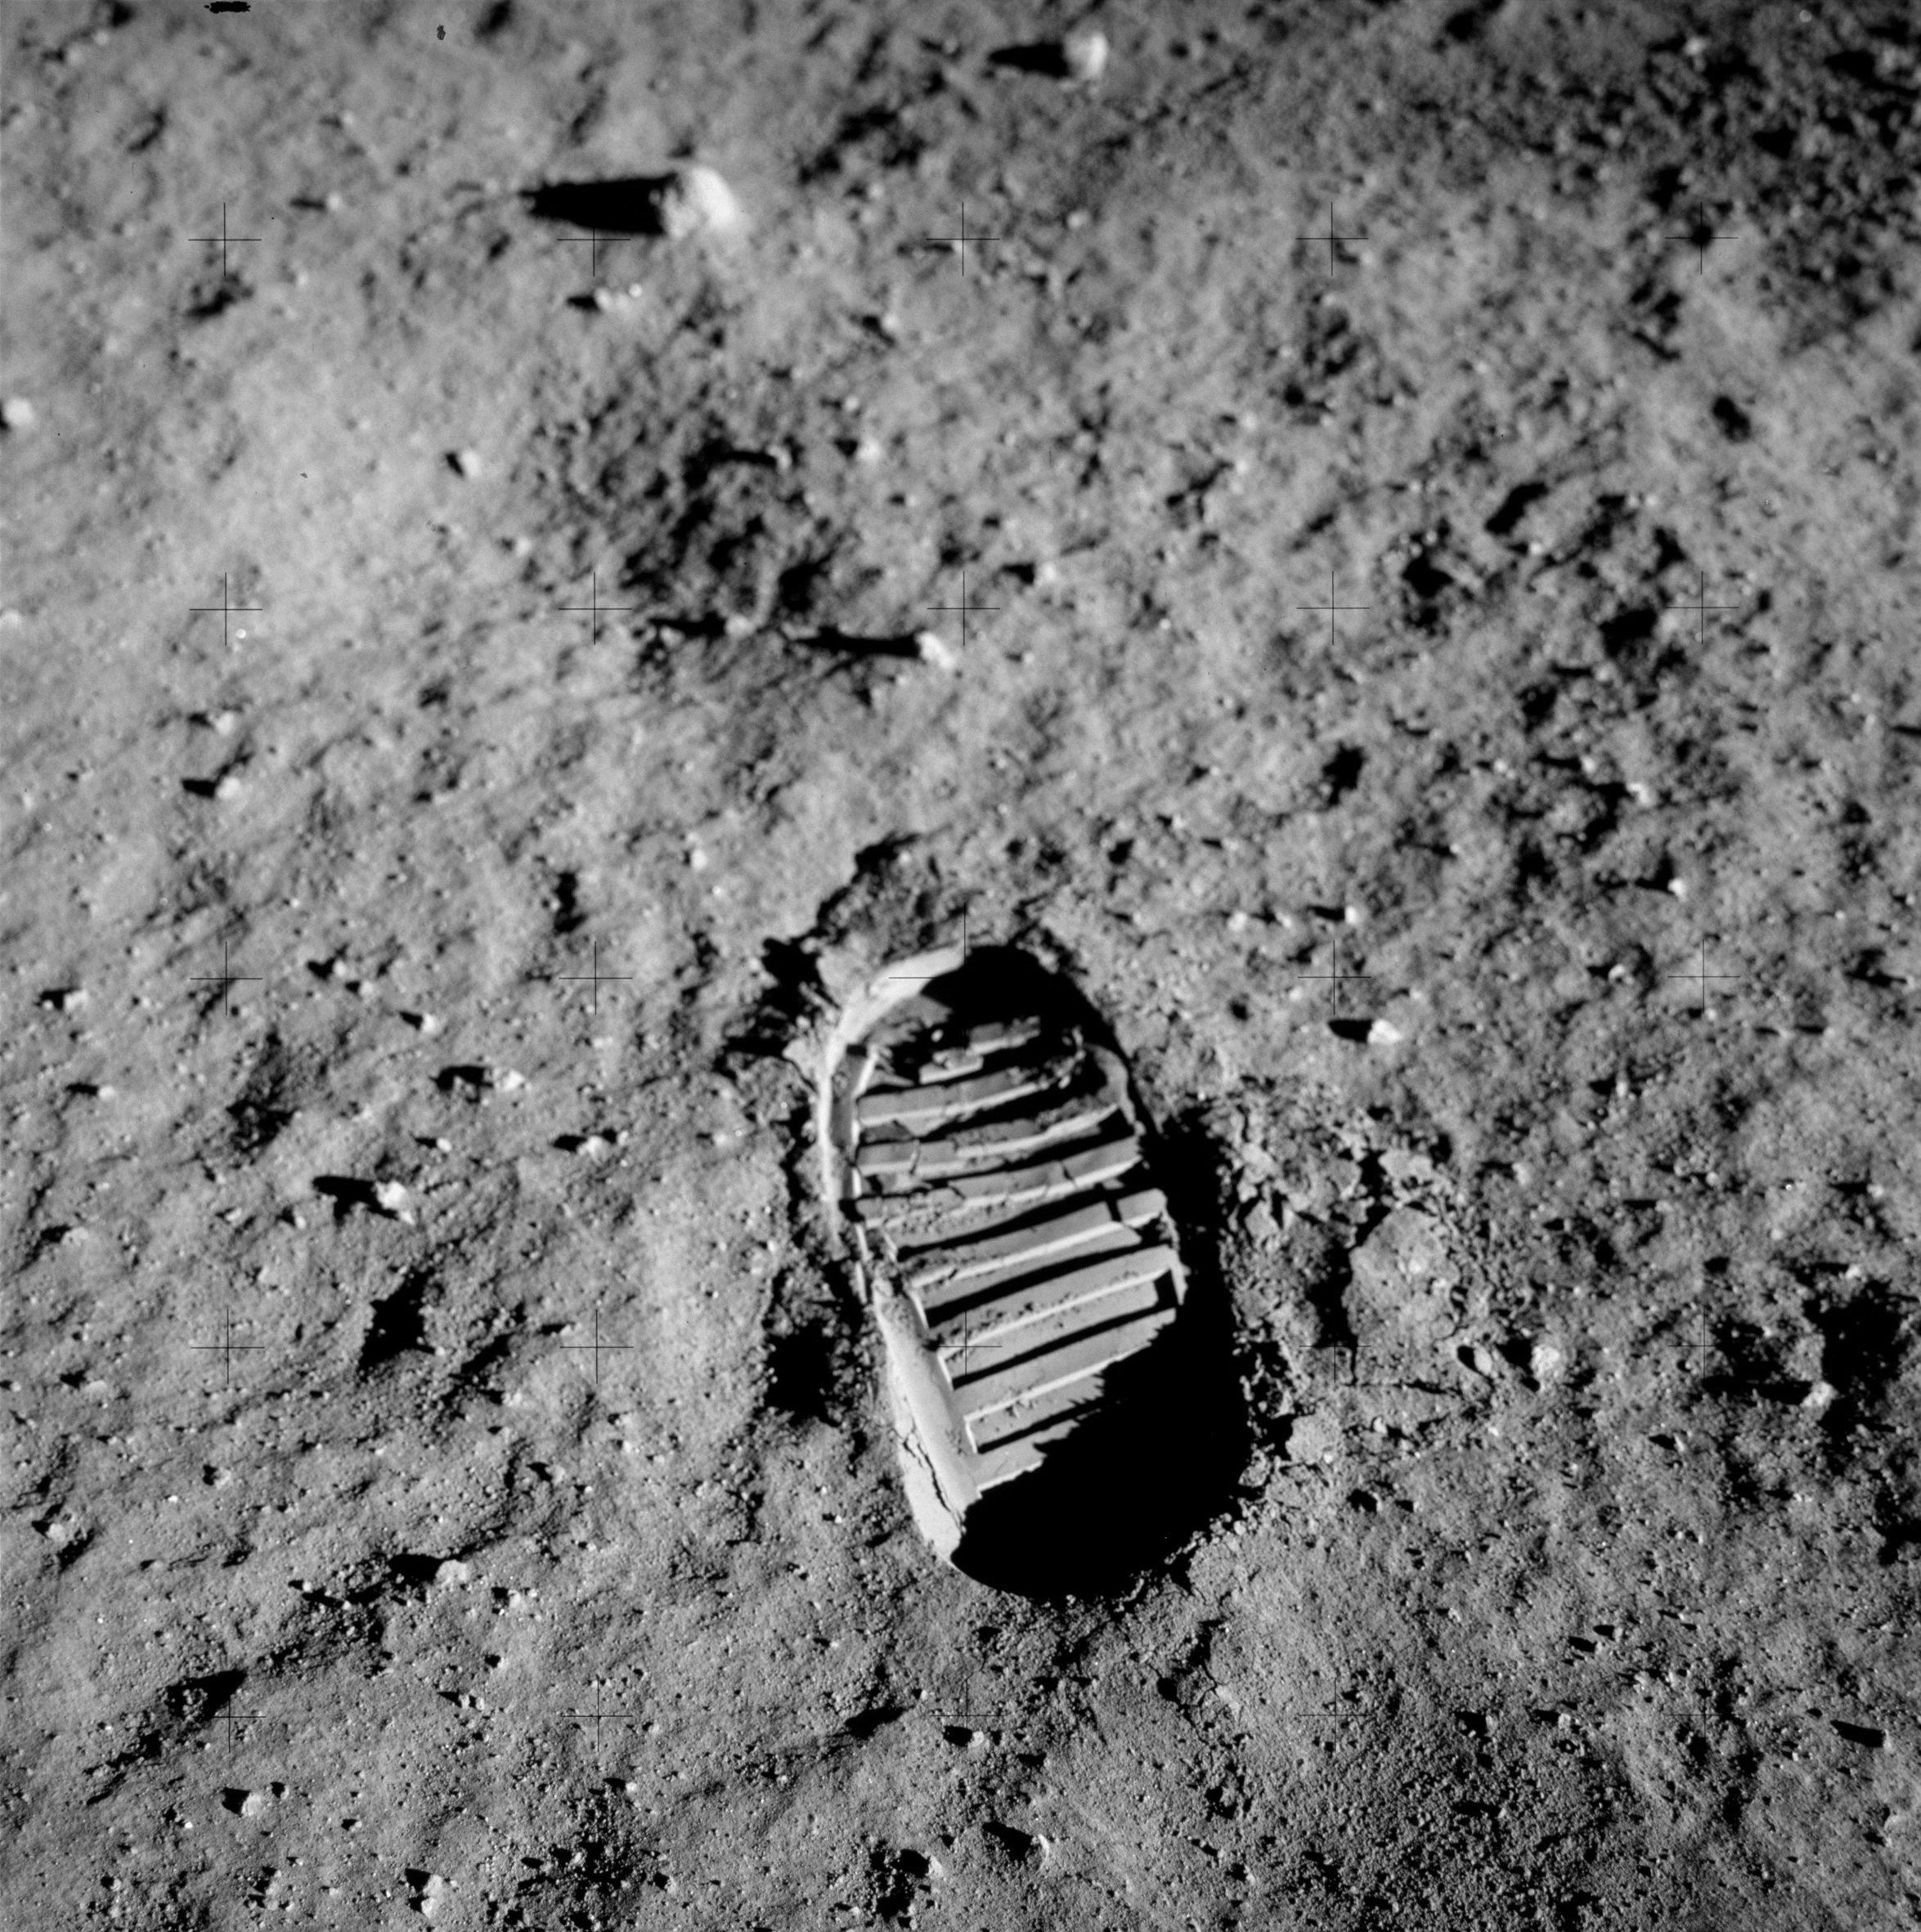 buzz aldrin footprint moon apollo 11